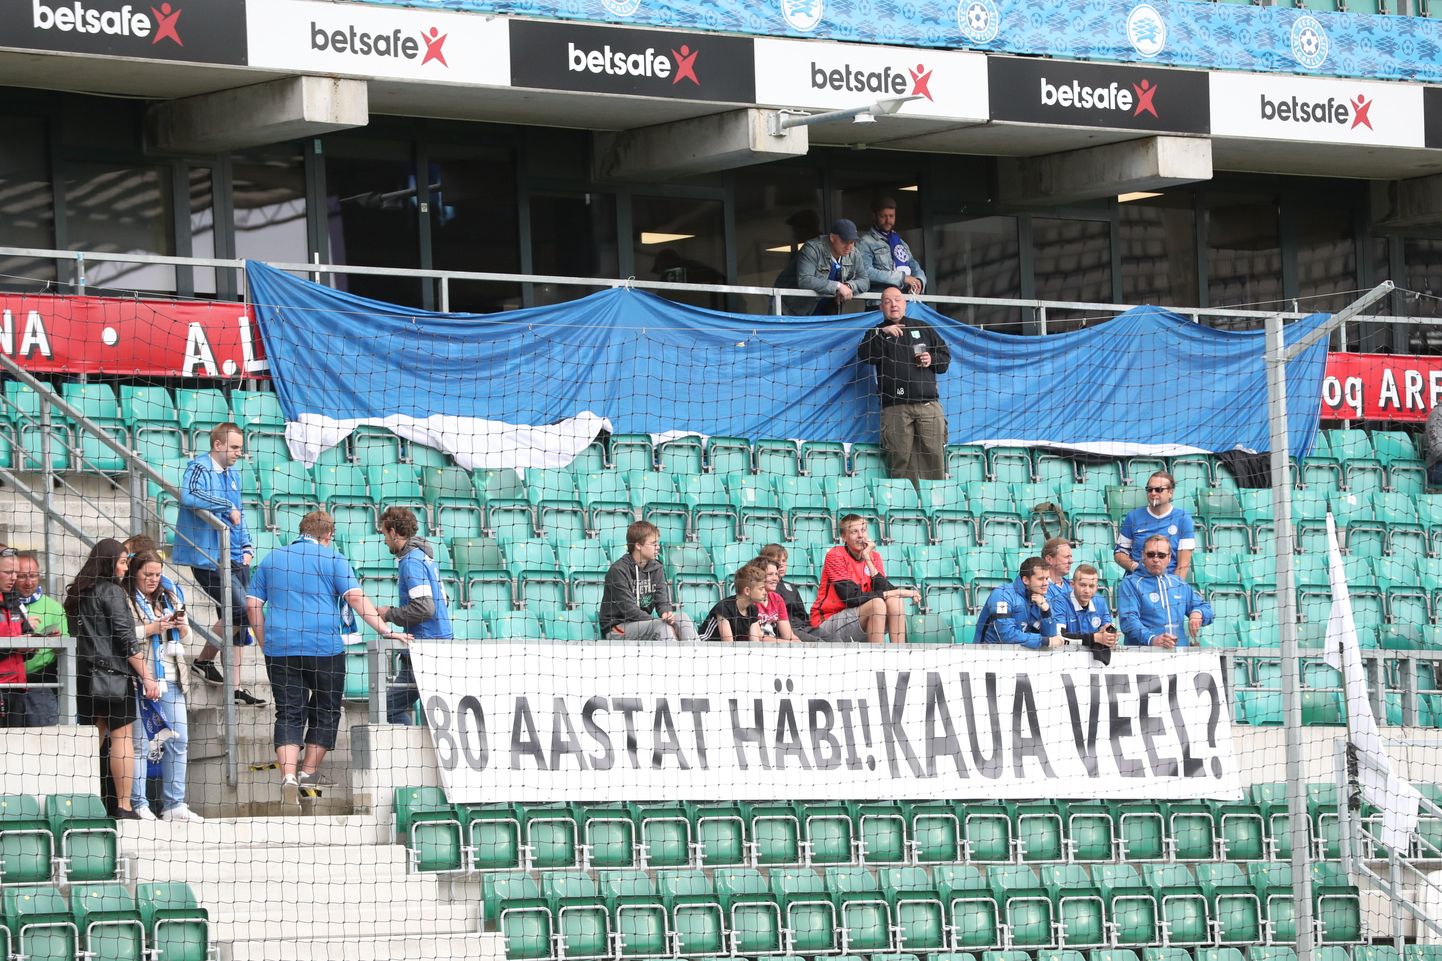 Eesti – Maroko maavõistluse eel on valmistatud ja fännitribüüni estakaadile riputatud plakat «80 aastat häbi! Kaua veel?»